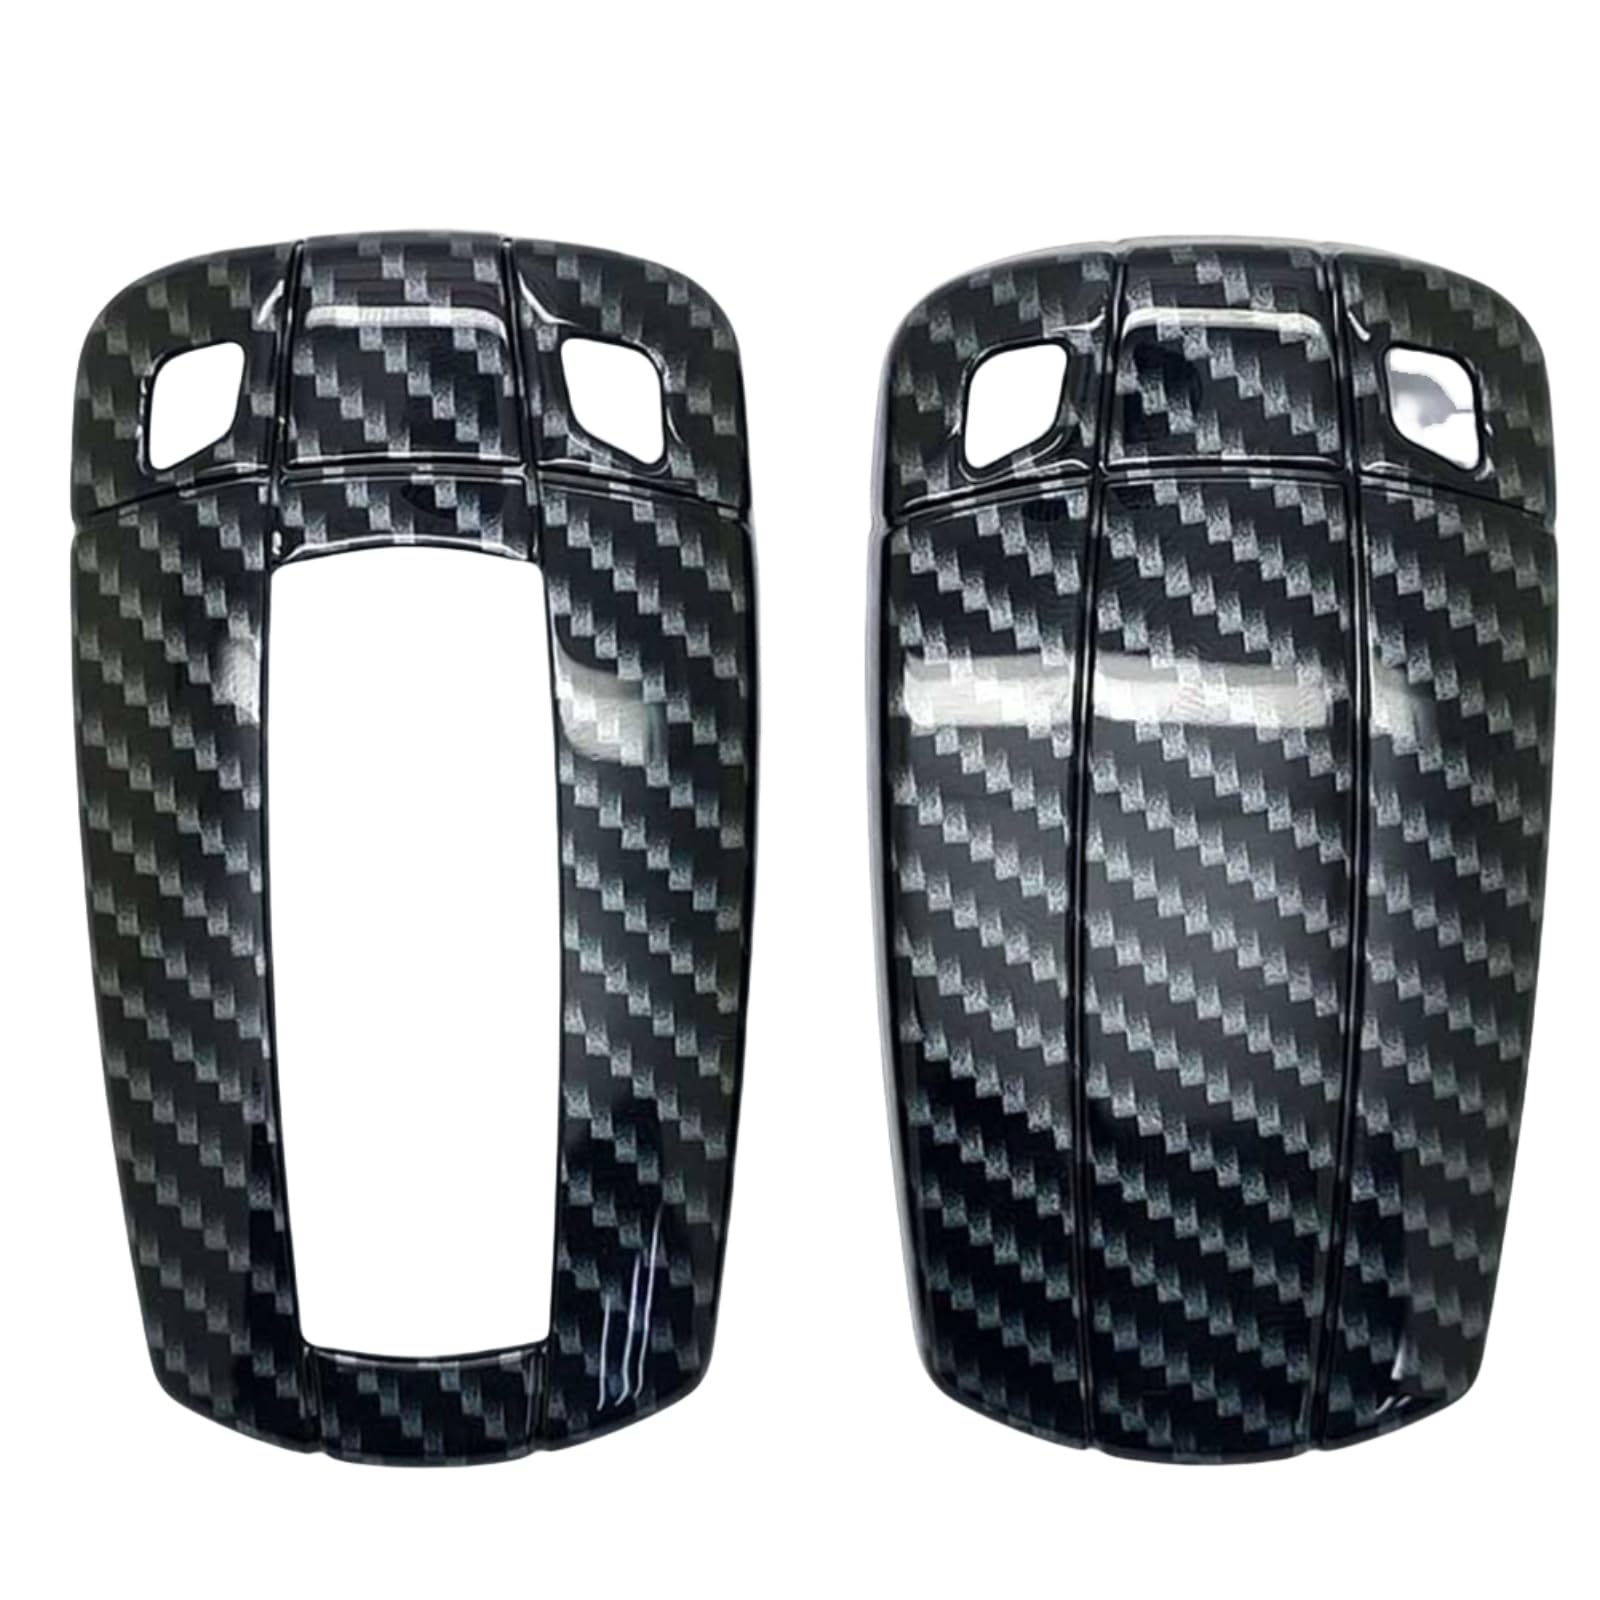 OTMIK ABS-Carbon-Faser-Muster-Autoschlüssel-Abdeckung Passend für BMW 1 3 5 6 7 Serie X1 X5 X6 E90 E92 E93 E60 Z4 Zubehör für Schlüsseletuis (Schwarz) von OTMIK